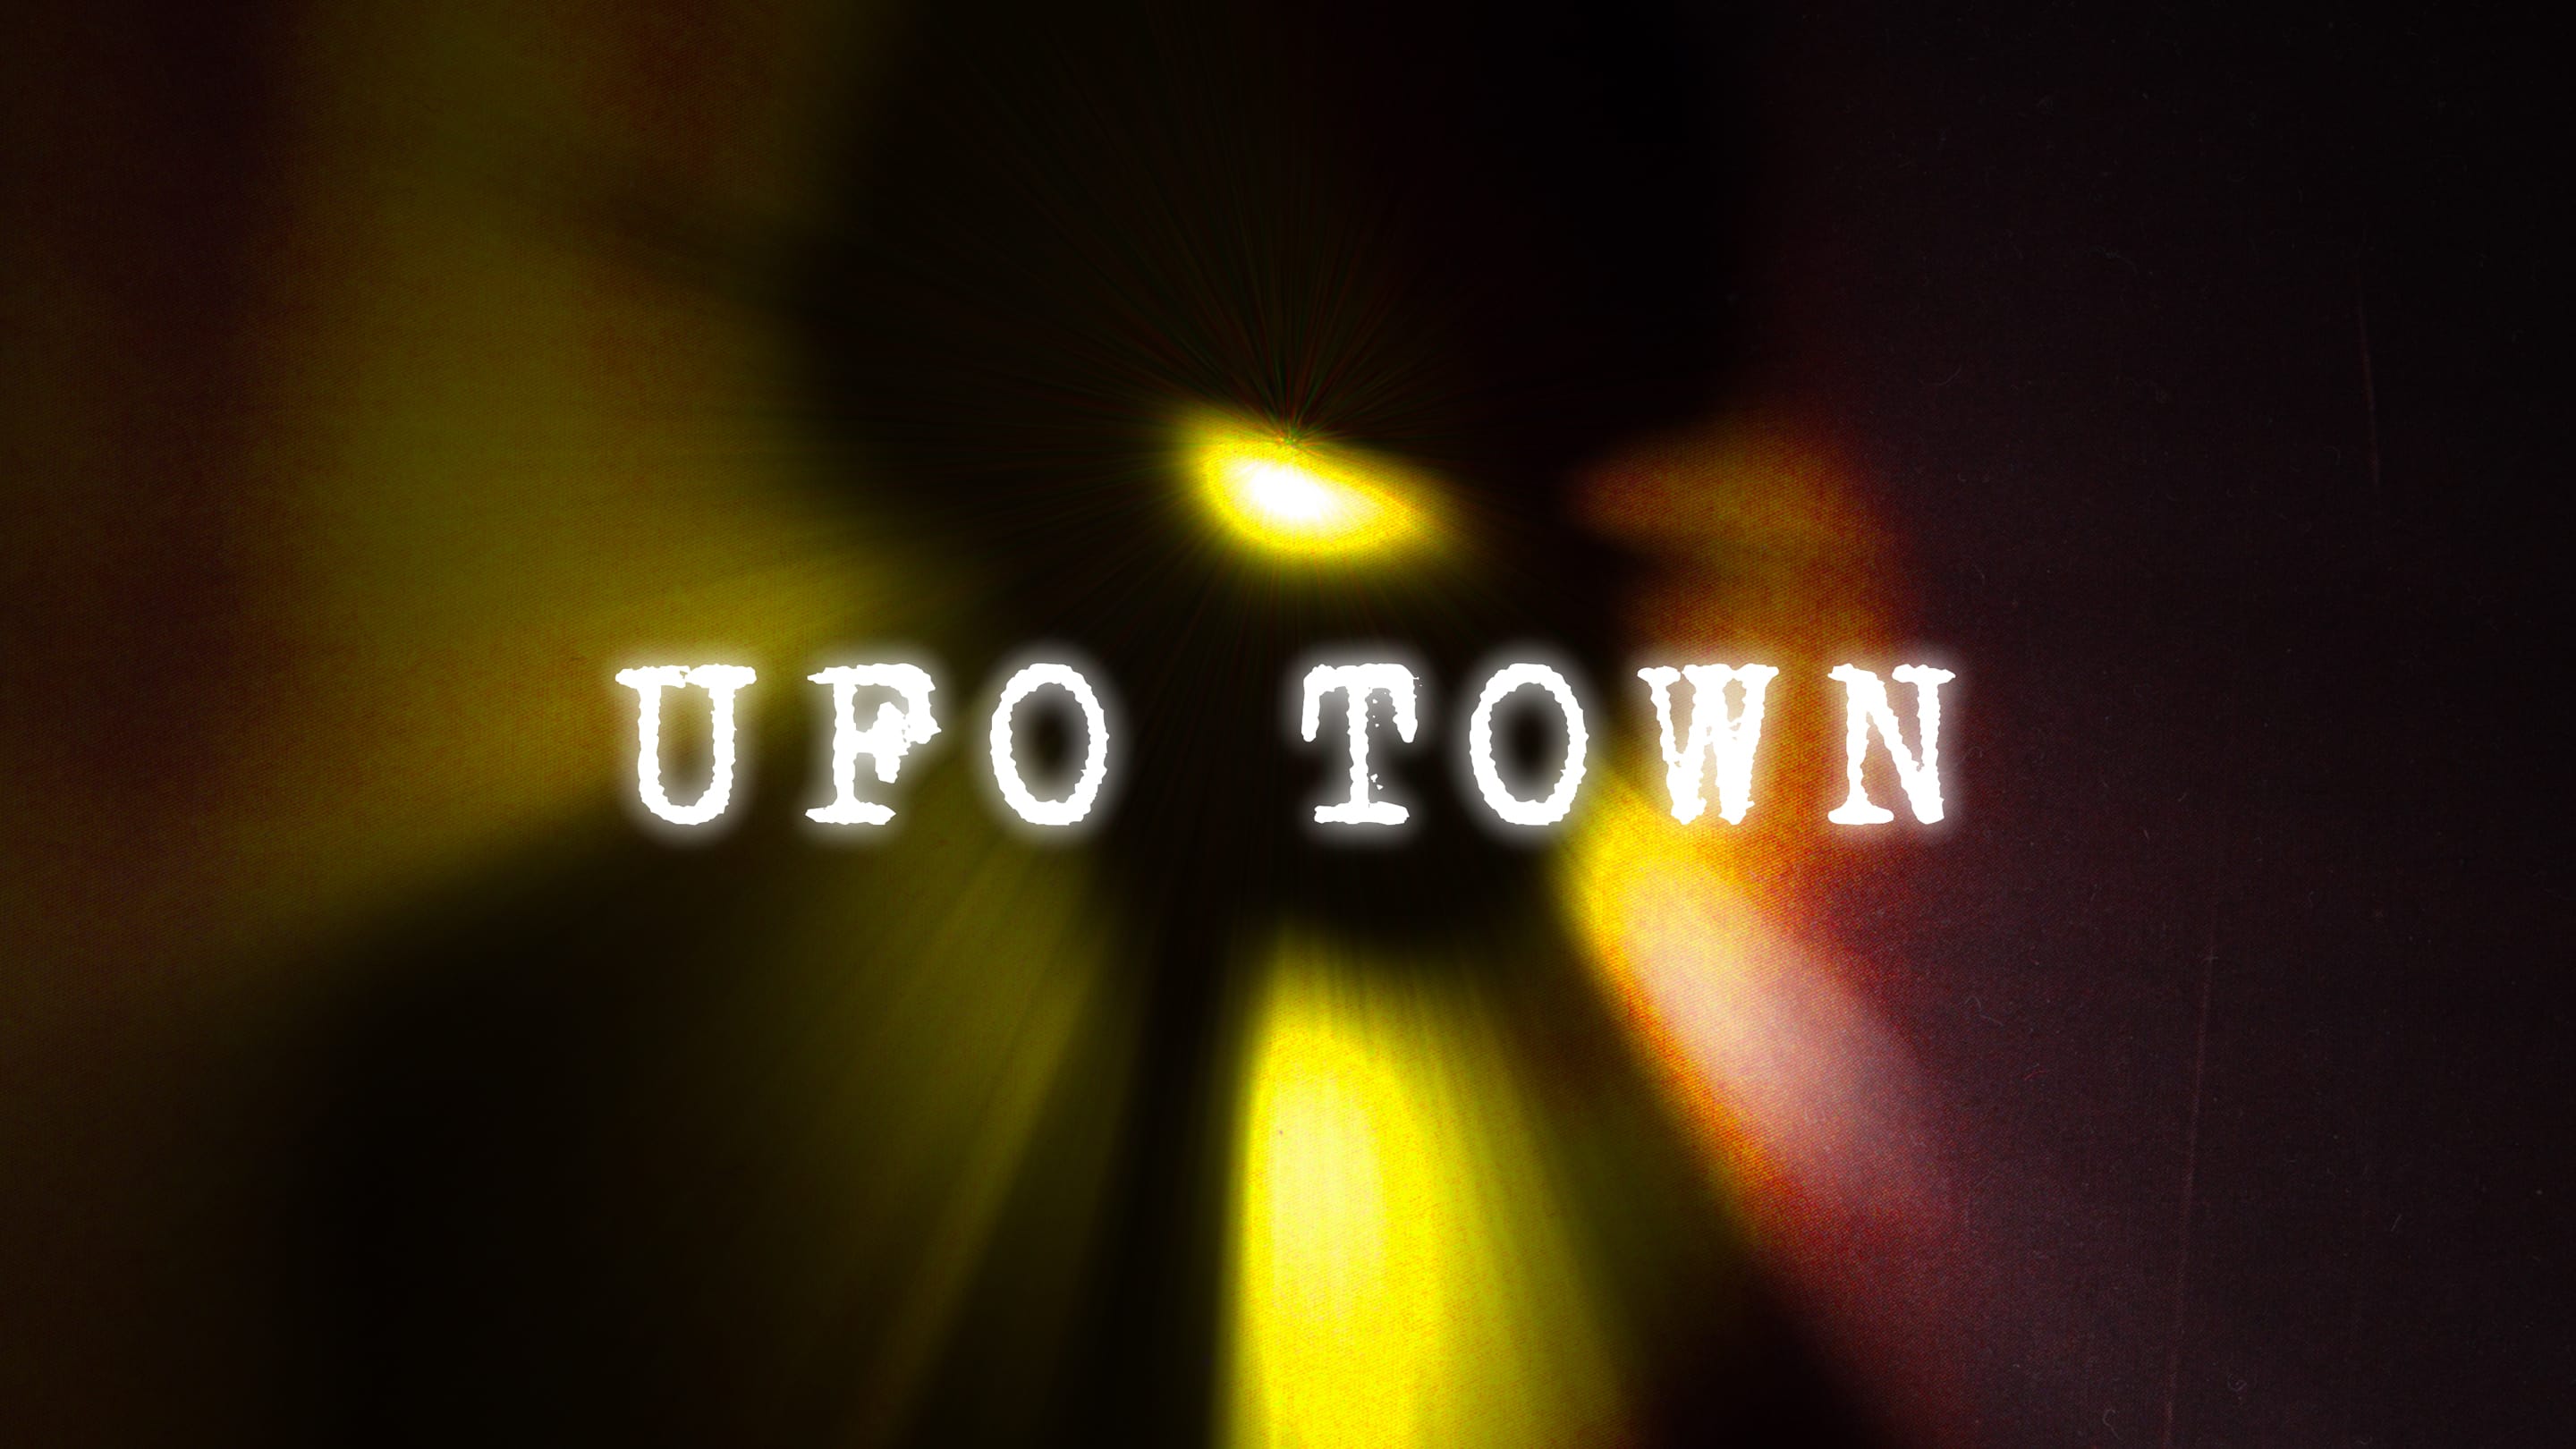 Caratula de UFO Town (El pueblo de los OVNIS) 